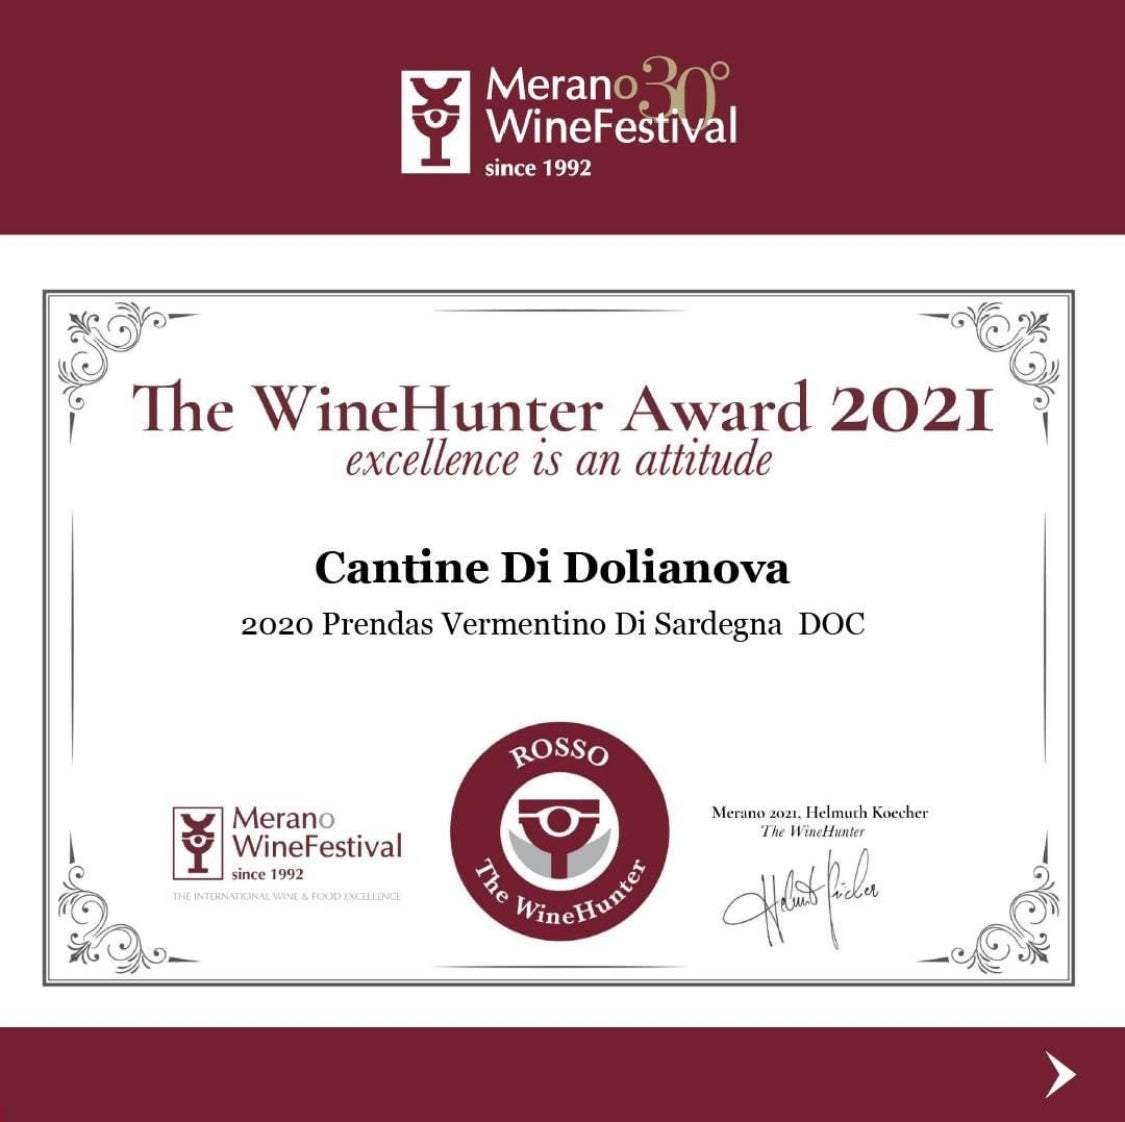 The Winehunter Award